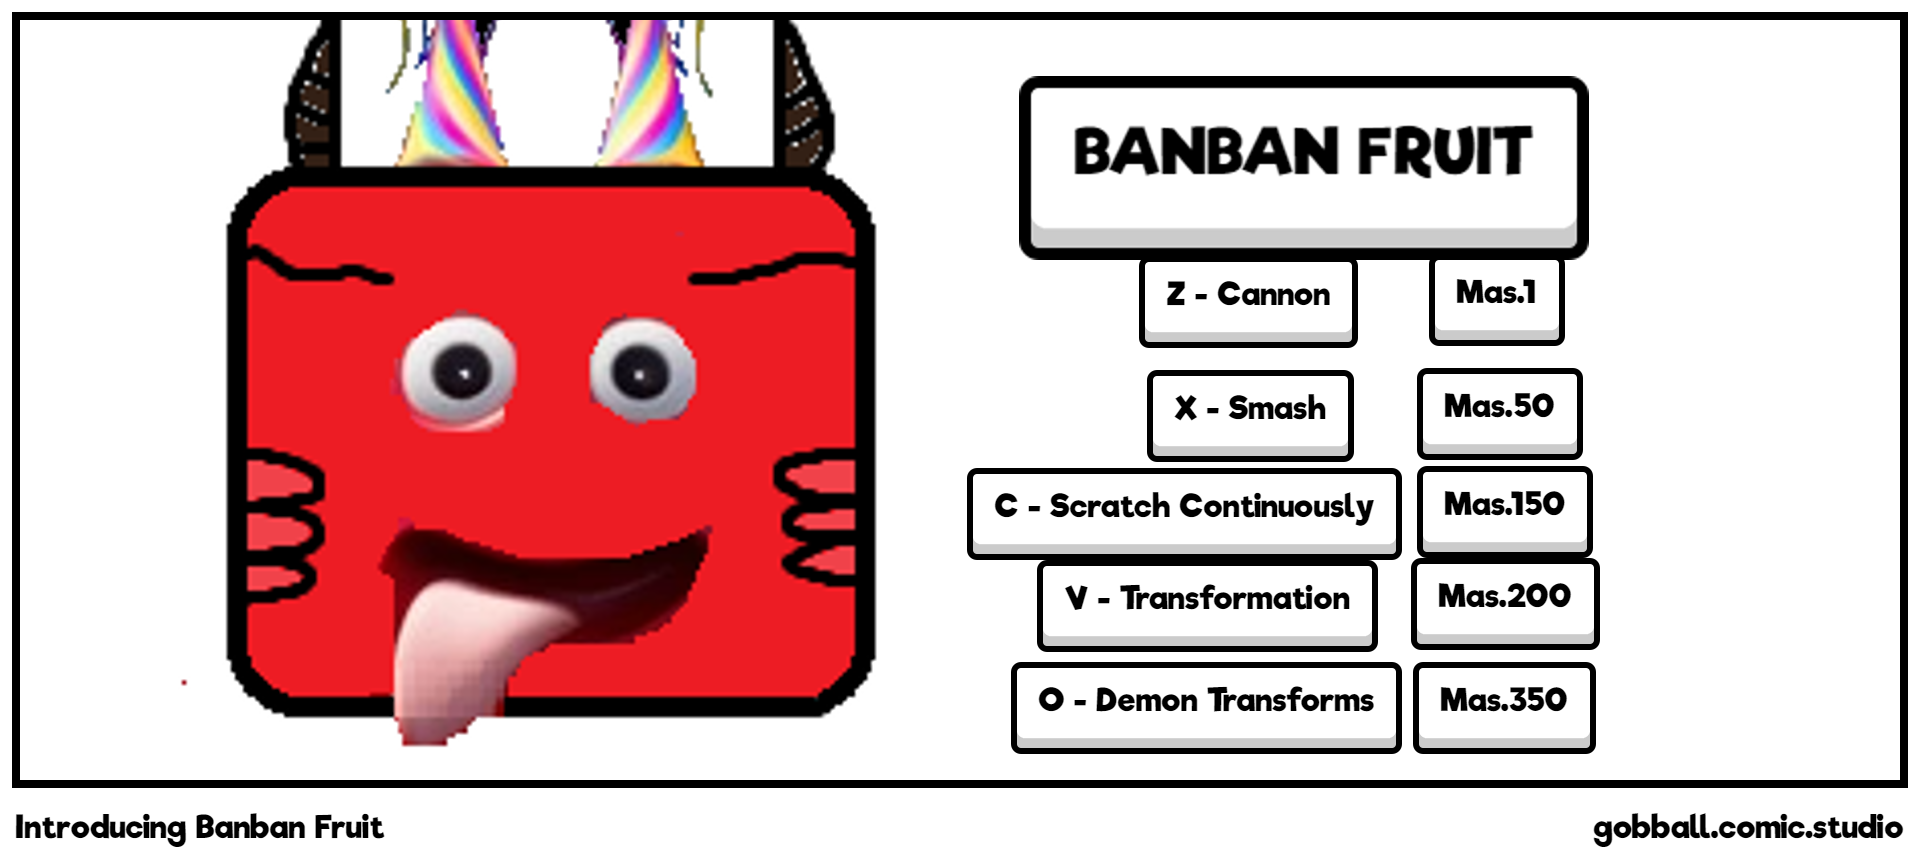 Introducing Banban Fruit